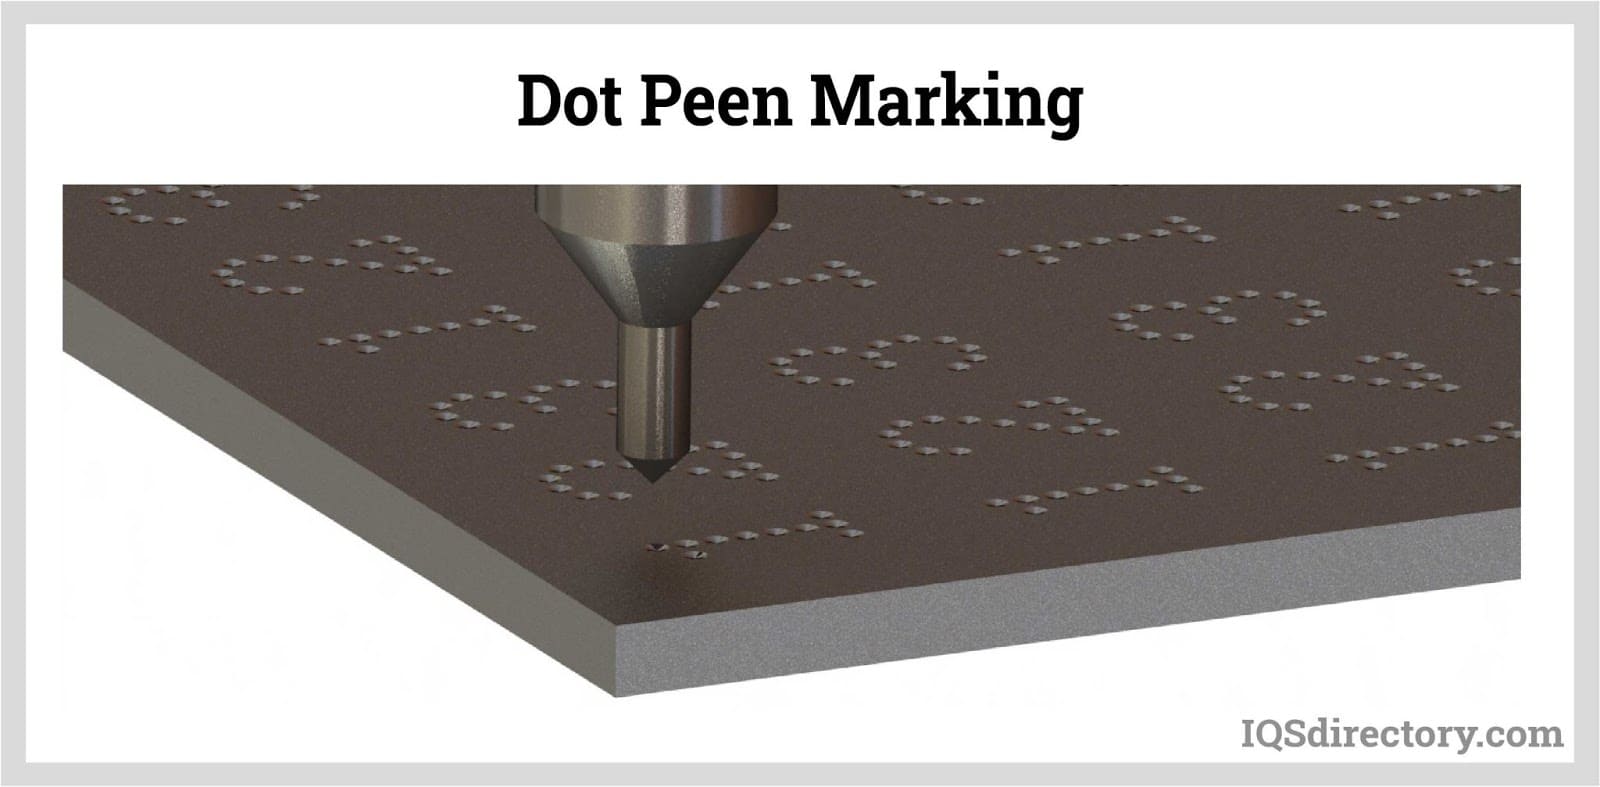 Dot Peen Marking